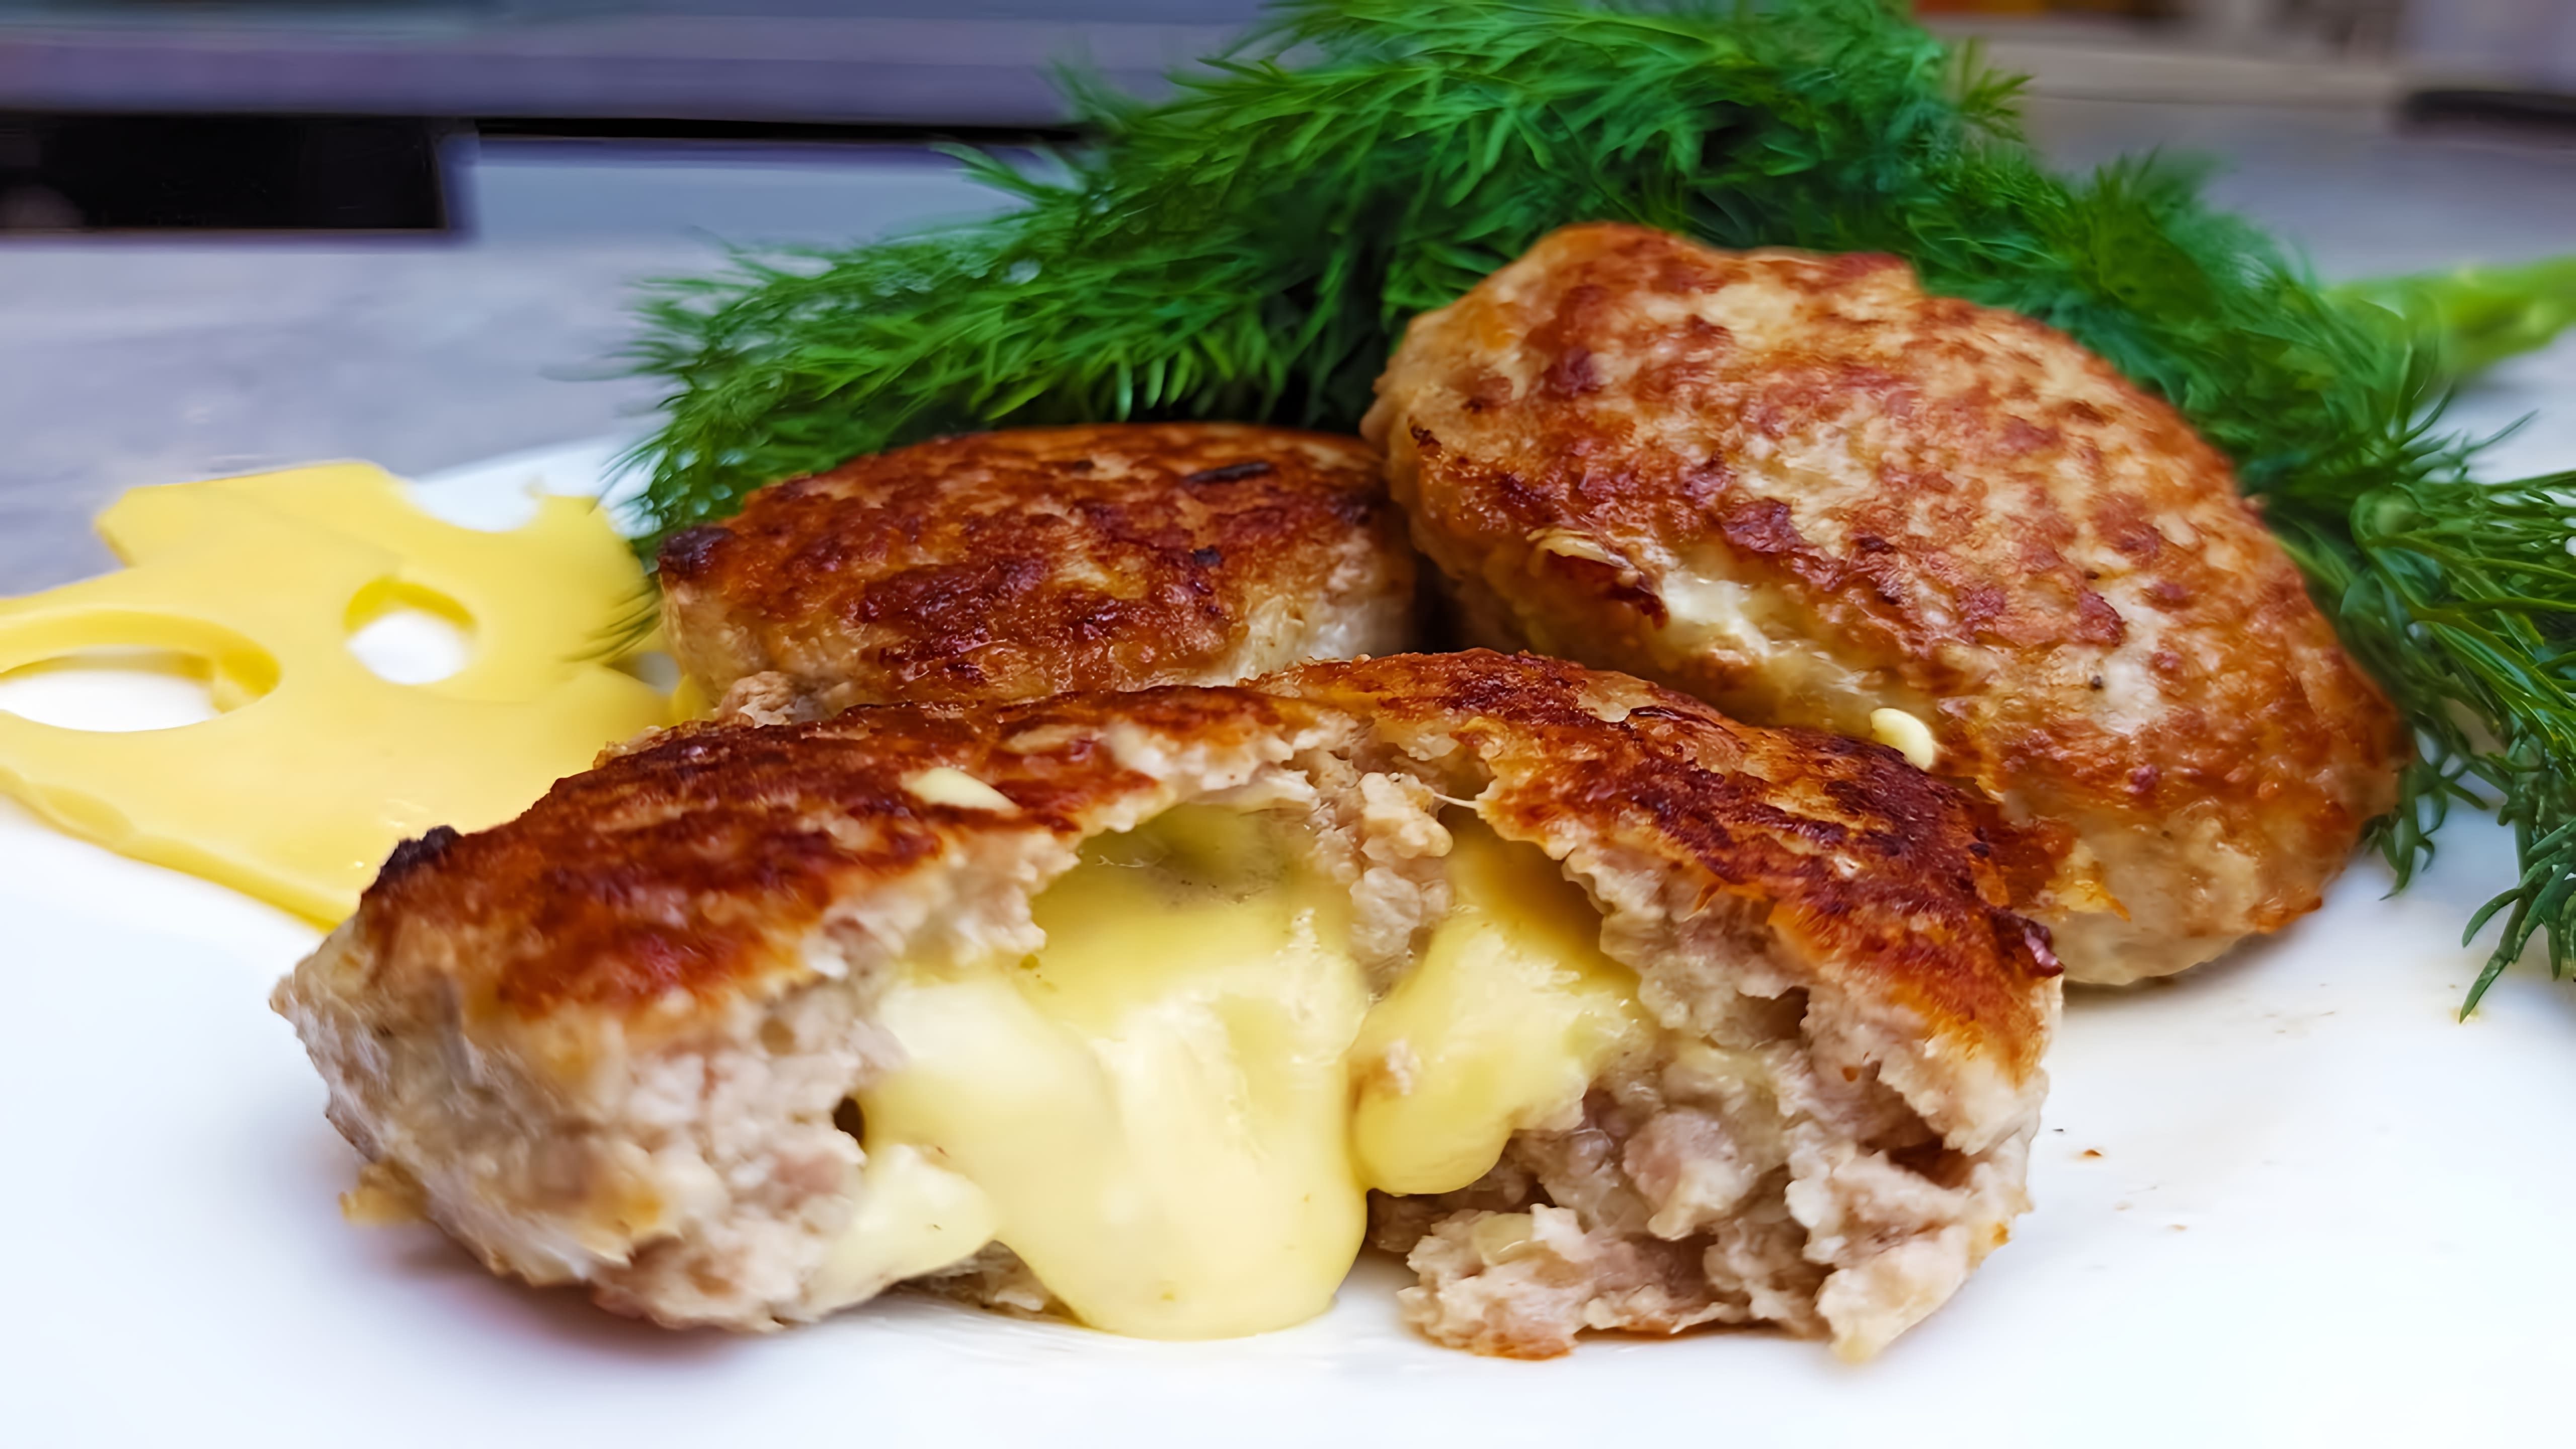 Вкуснейшие котлеты с сыром внутри - это простой рецепт, который можно приготовить в домашних условиях